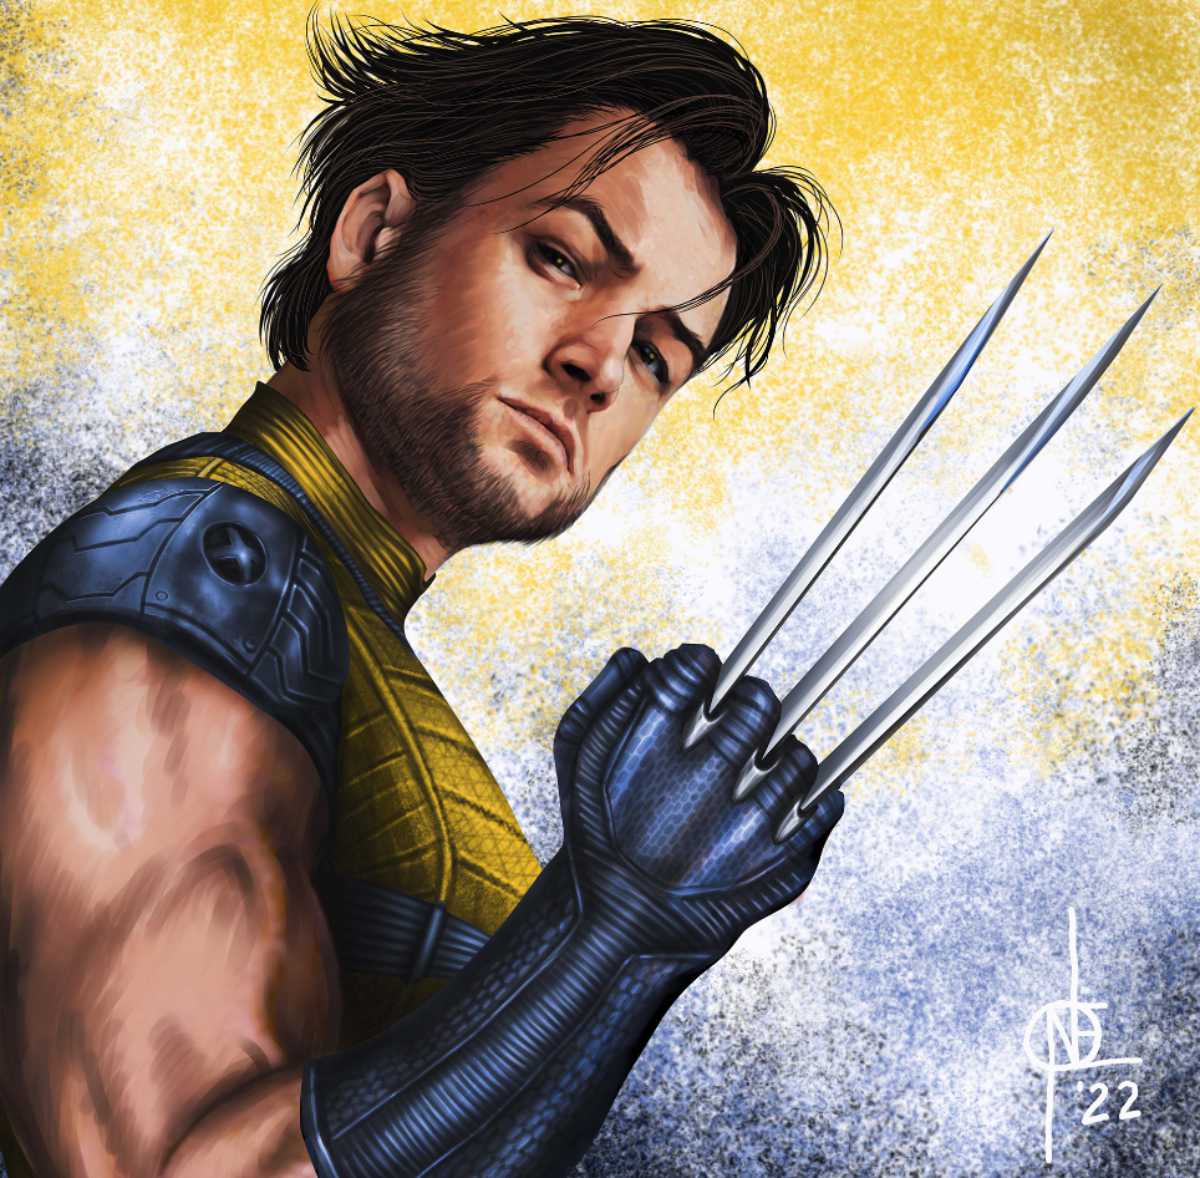 Taron Egerton Looks Sharp As Wolverine In New Fan Art